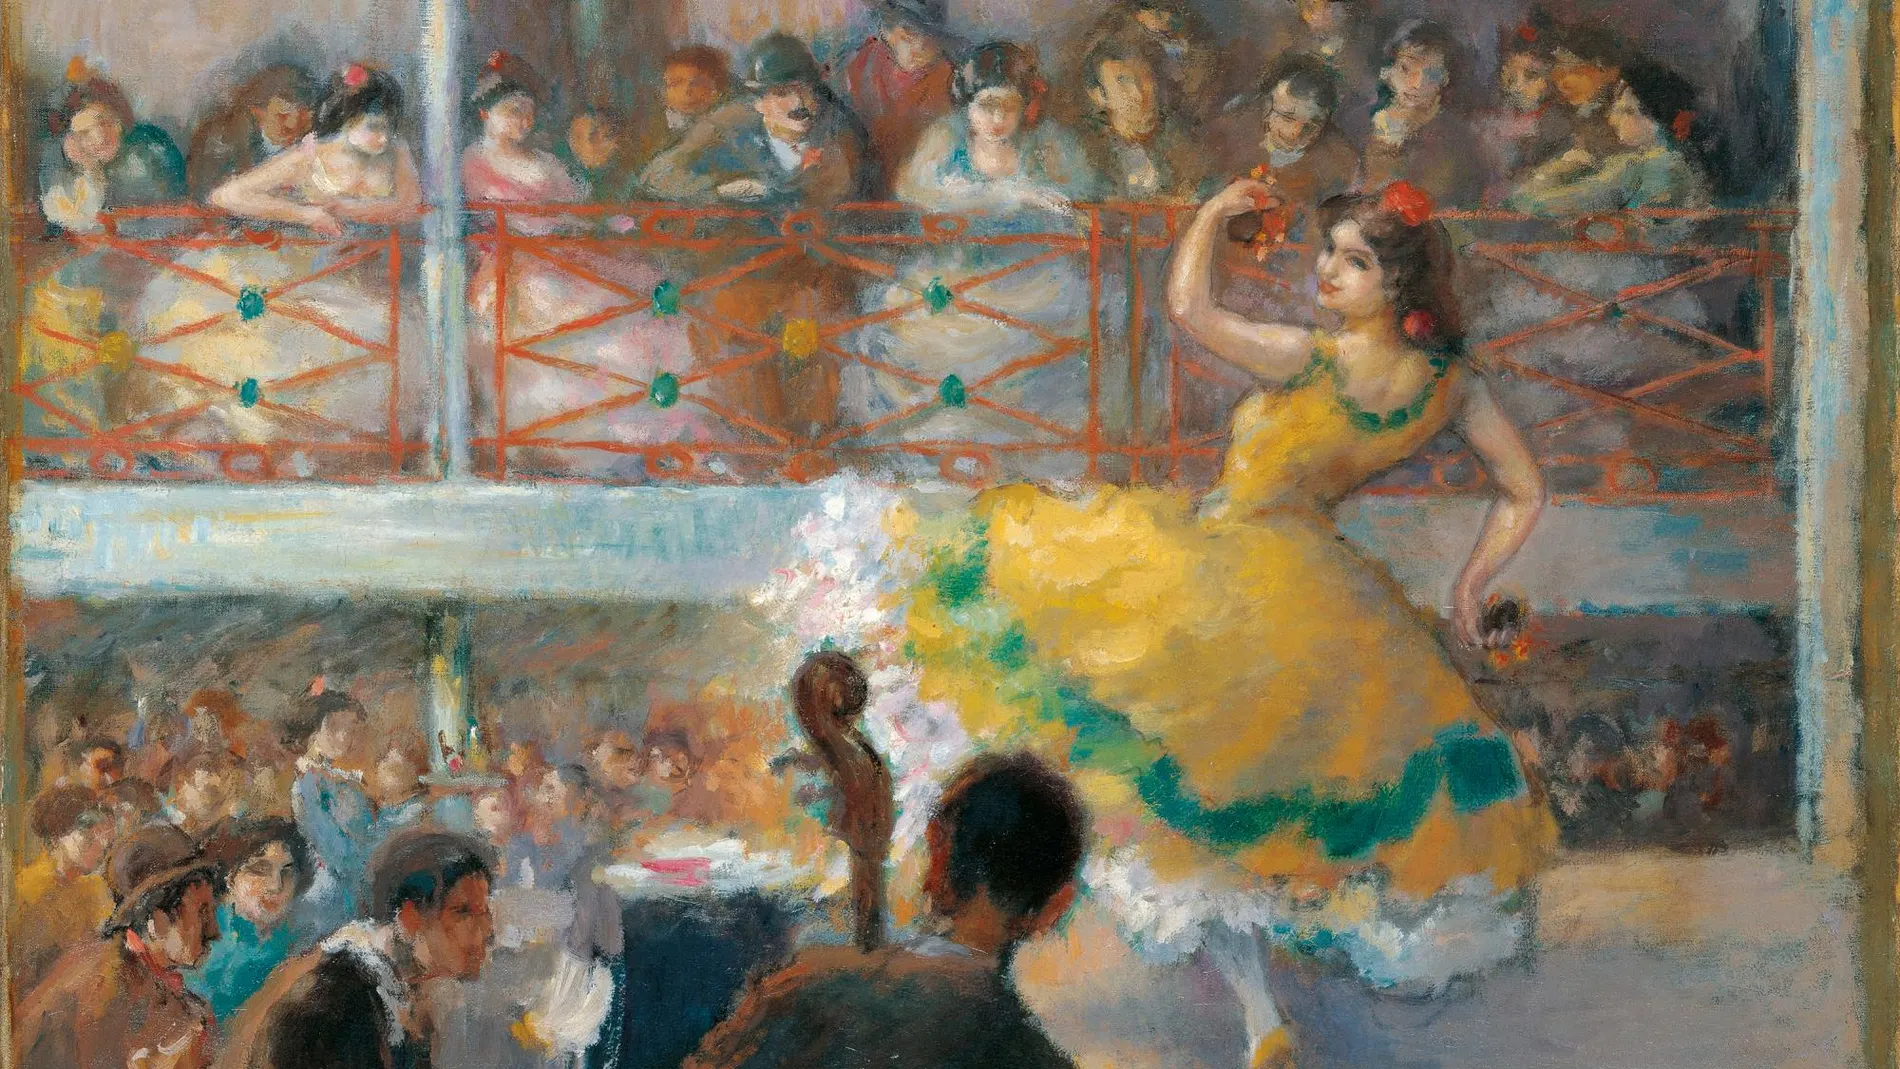 La obra «Baile flamenco» de Ricard Canals i Llambí